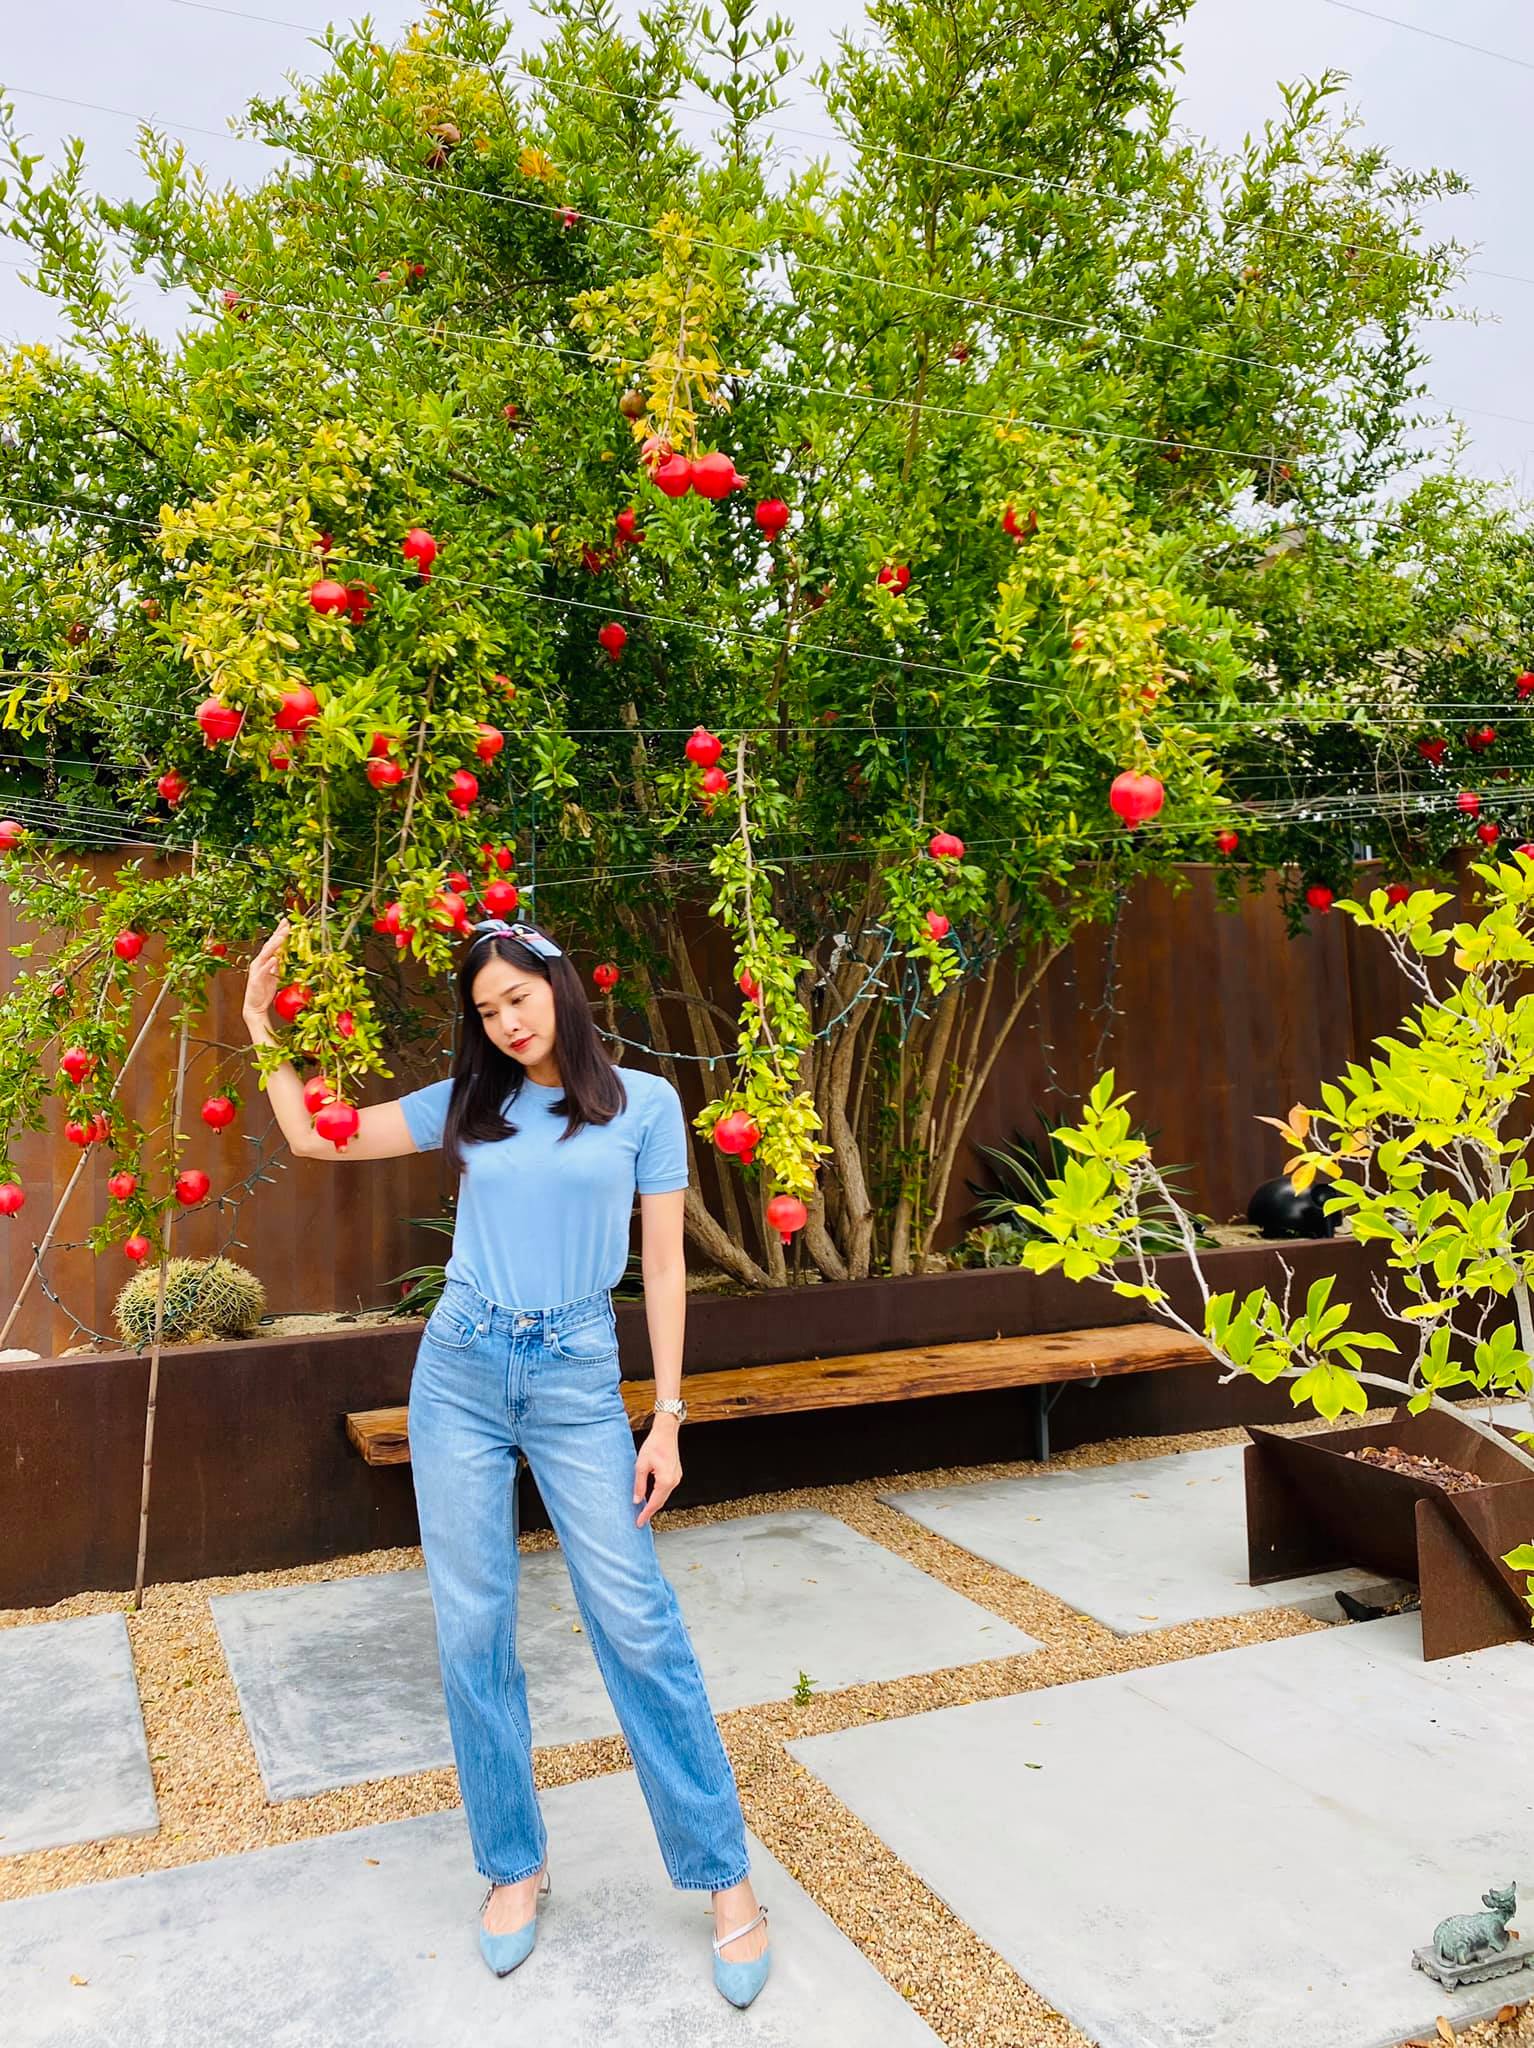 Đã mắt với vườn trái cây trong biệt thự của Hoa hậu Dương Mỹ Linh, có 1 góc đặc biệt ai xa quê cũng thích-8